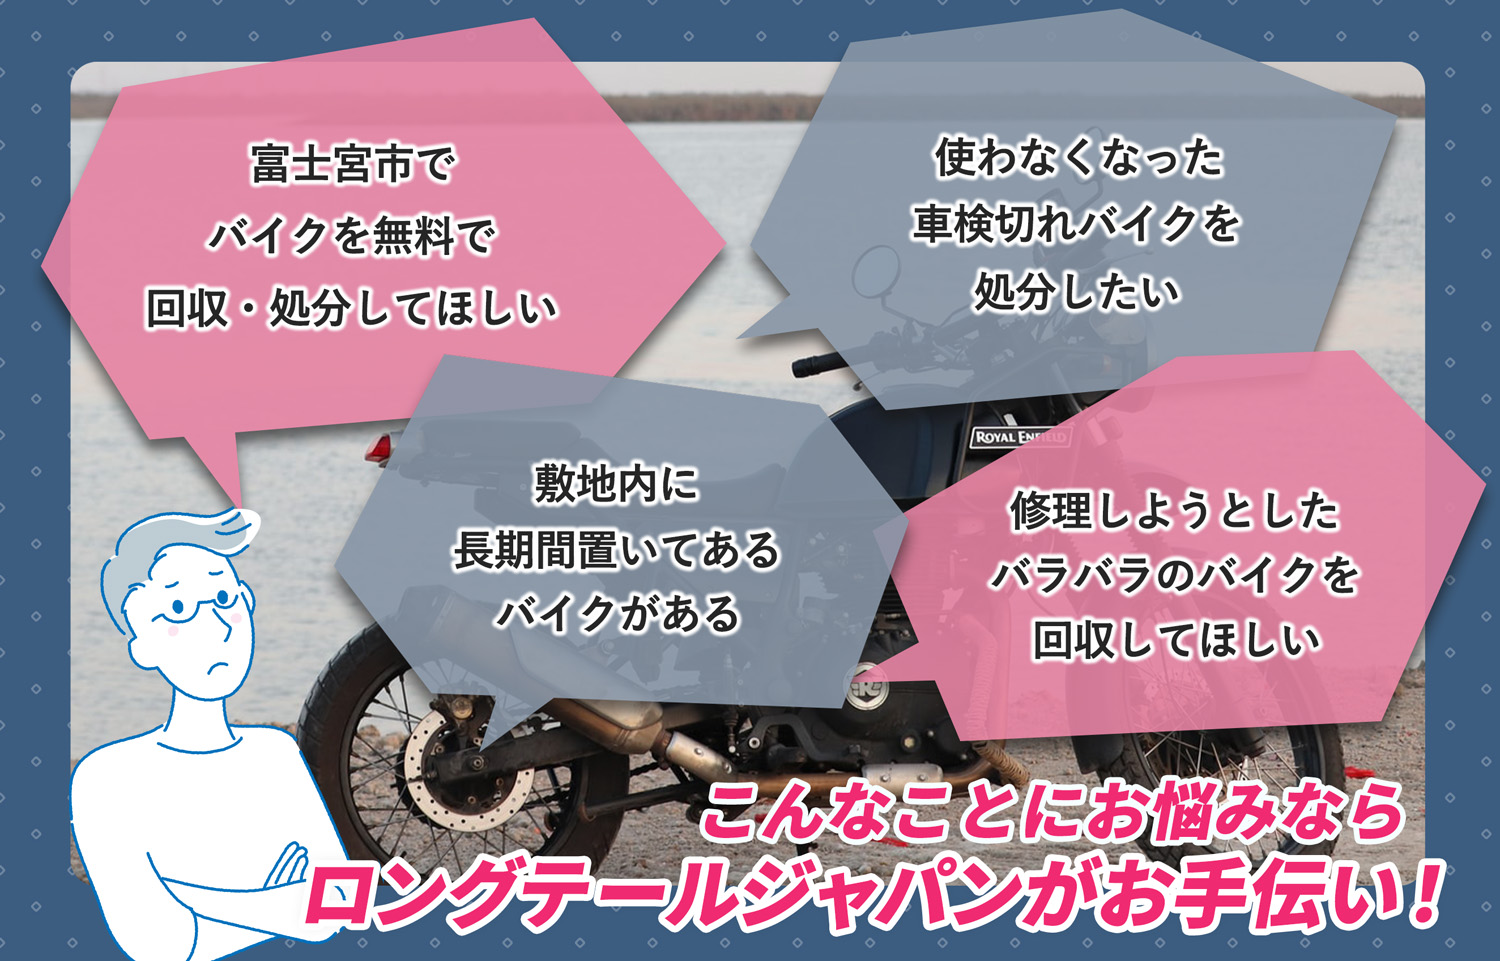 富士宮市でこんなバイクの処分にお困りでしたらバイク無料回収処分隊がお手伝いいたします。